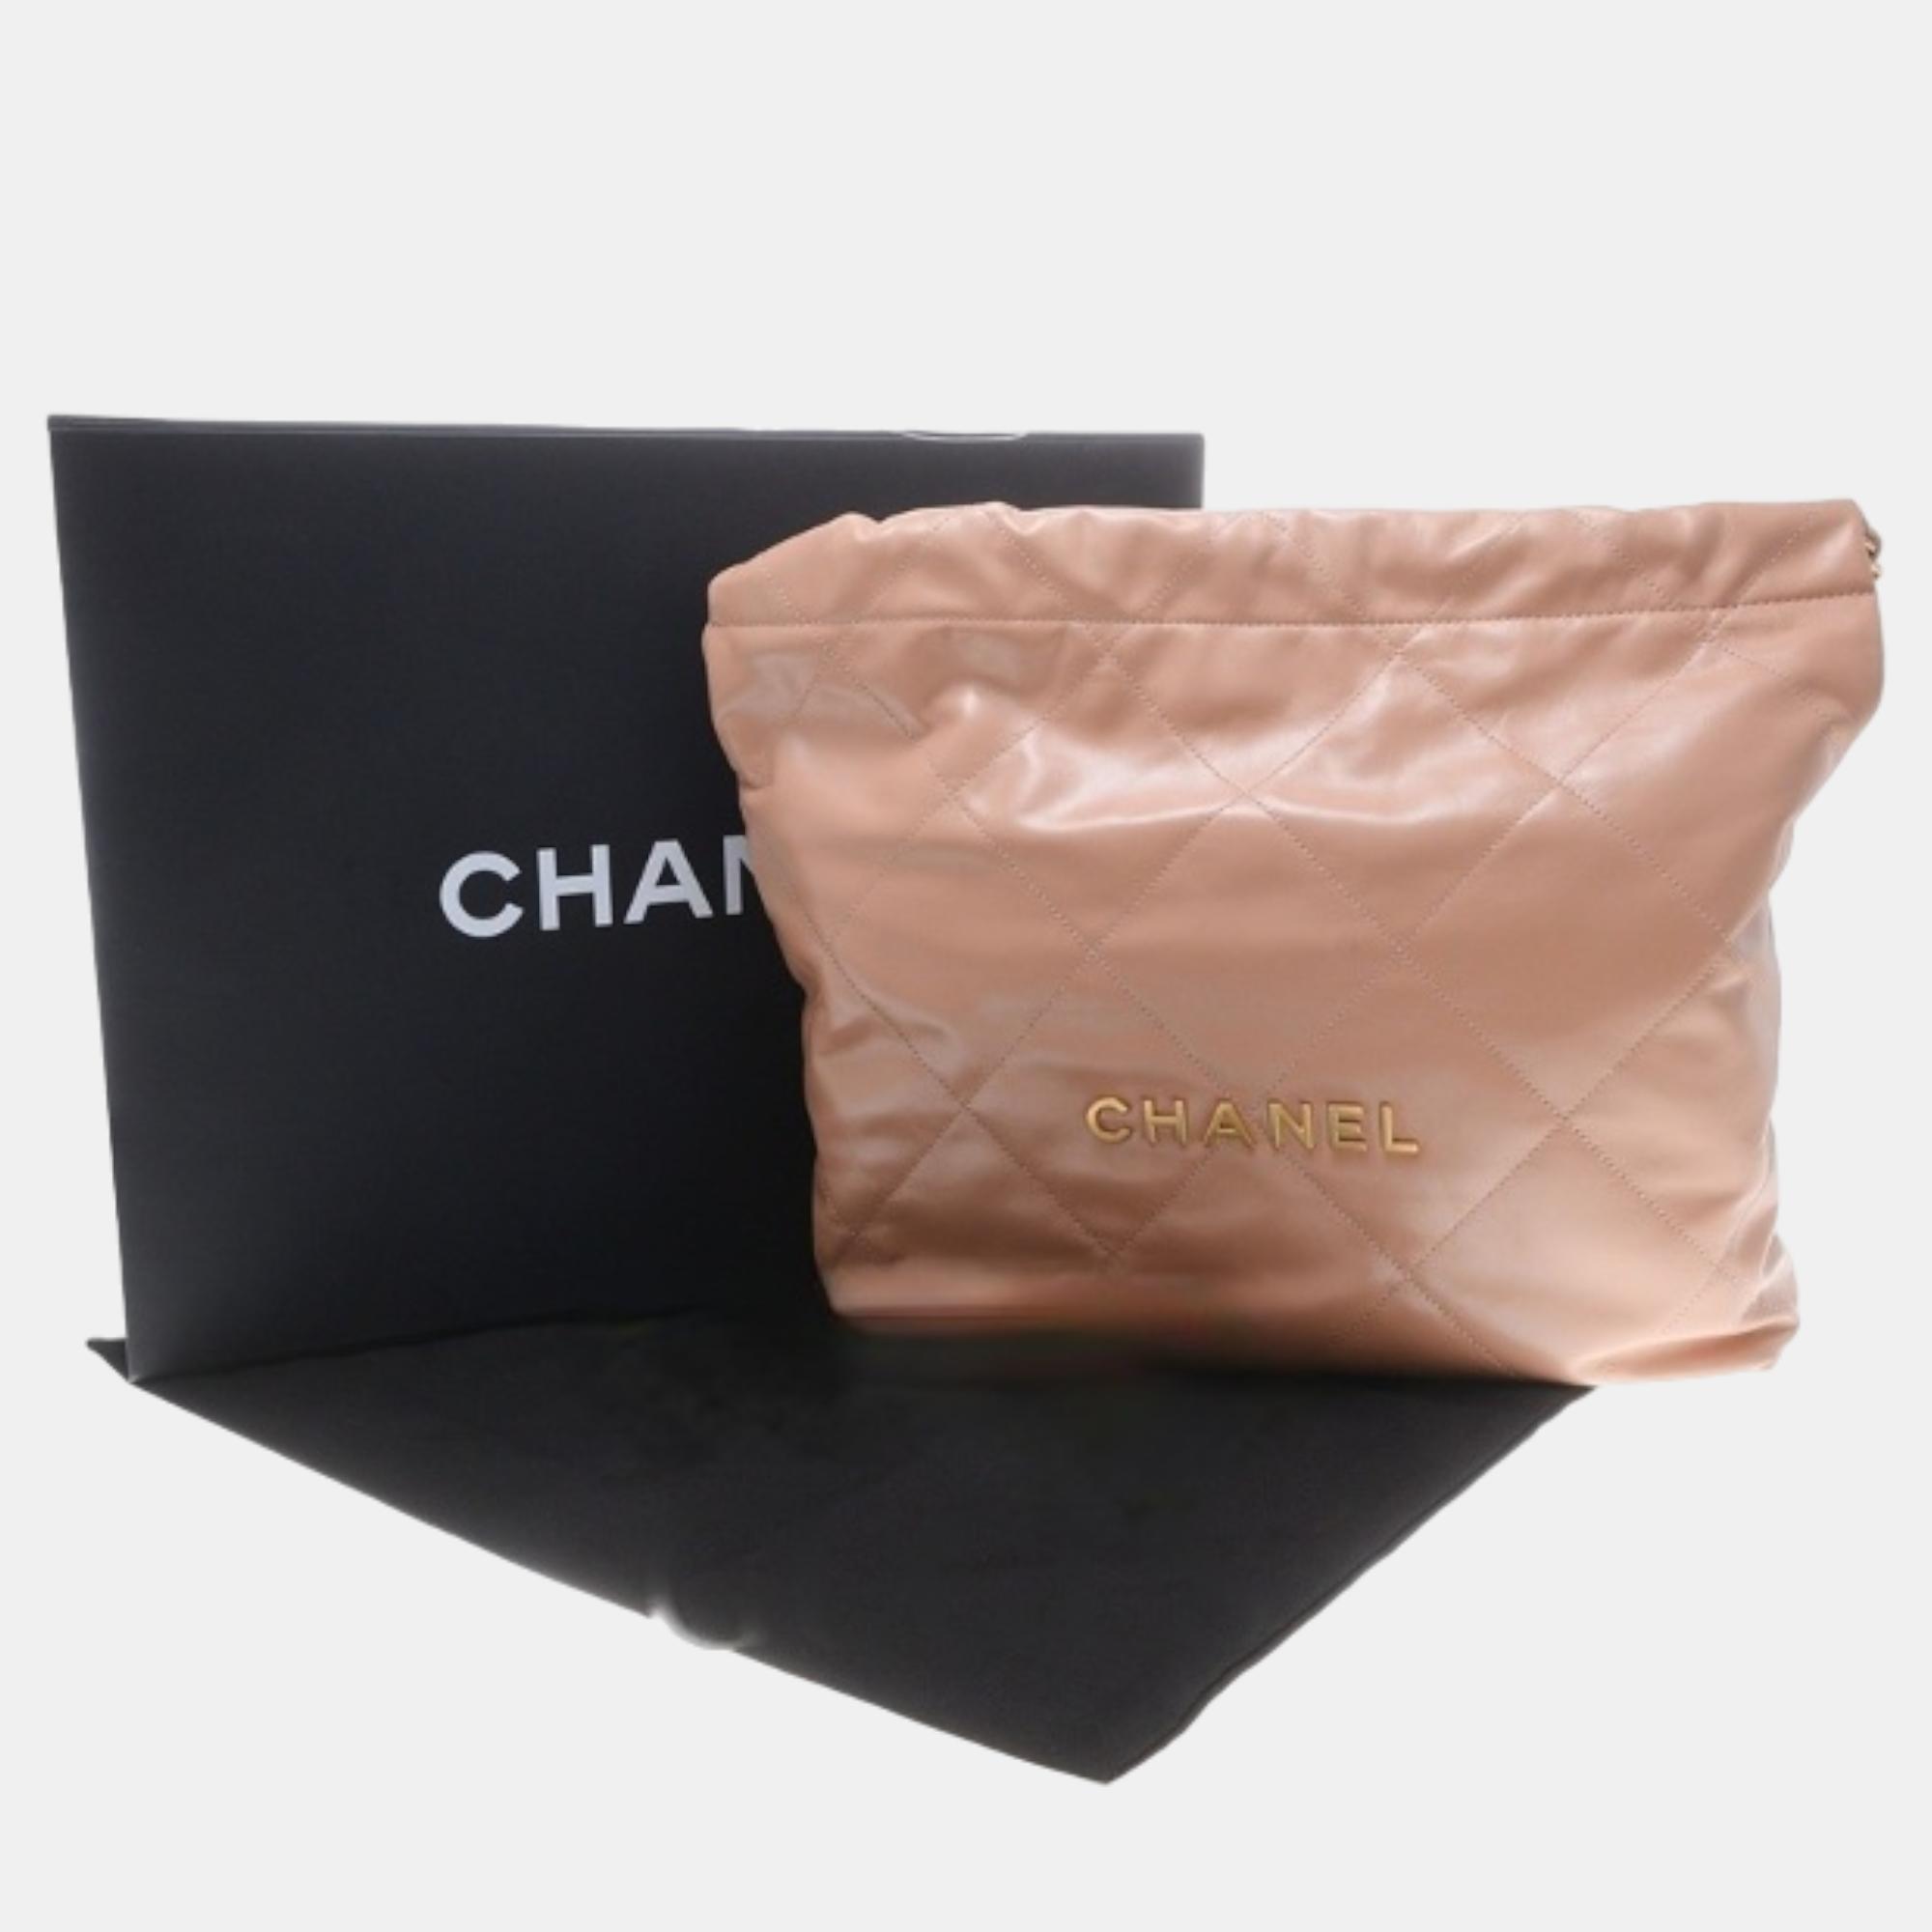 Chanel 22 Bag 35